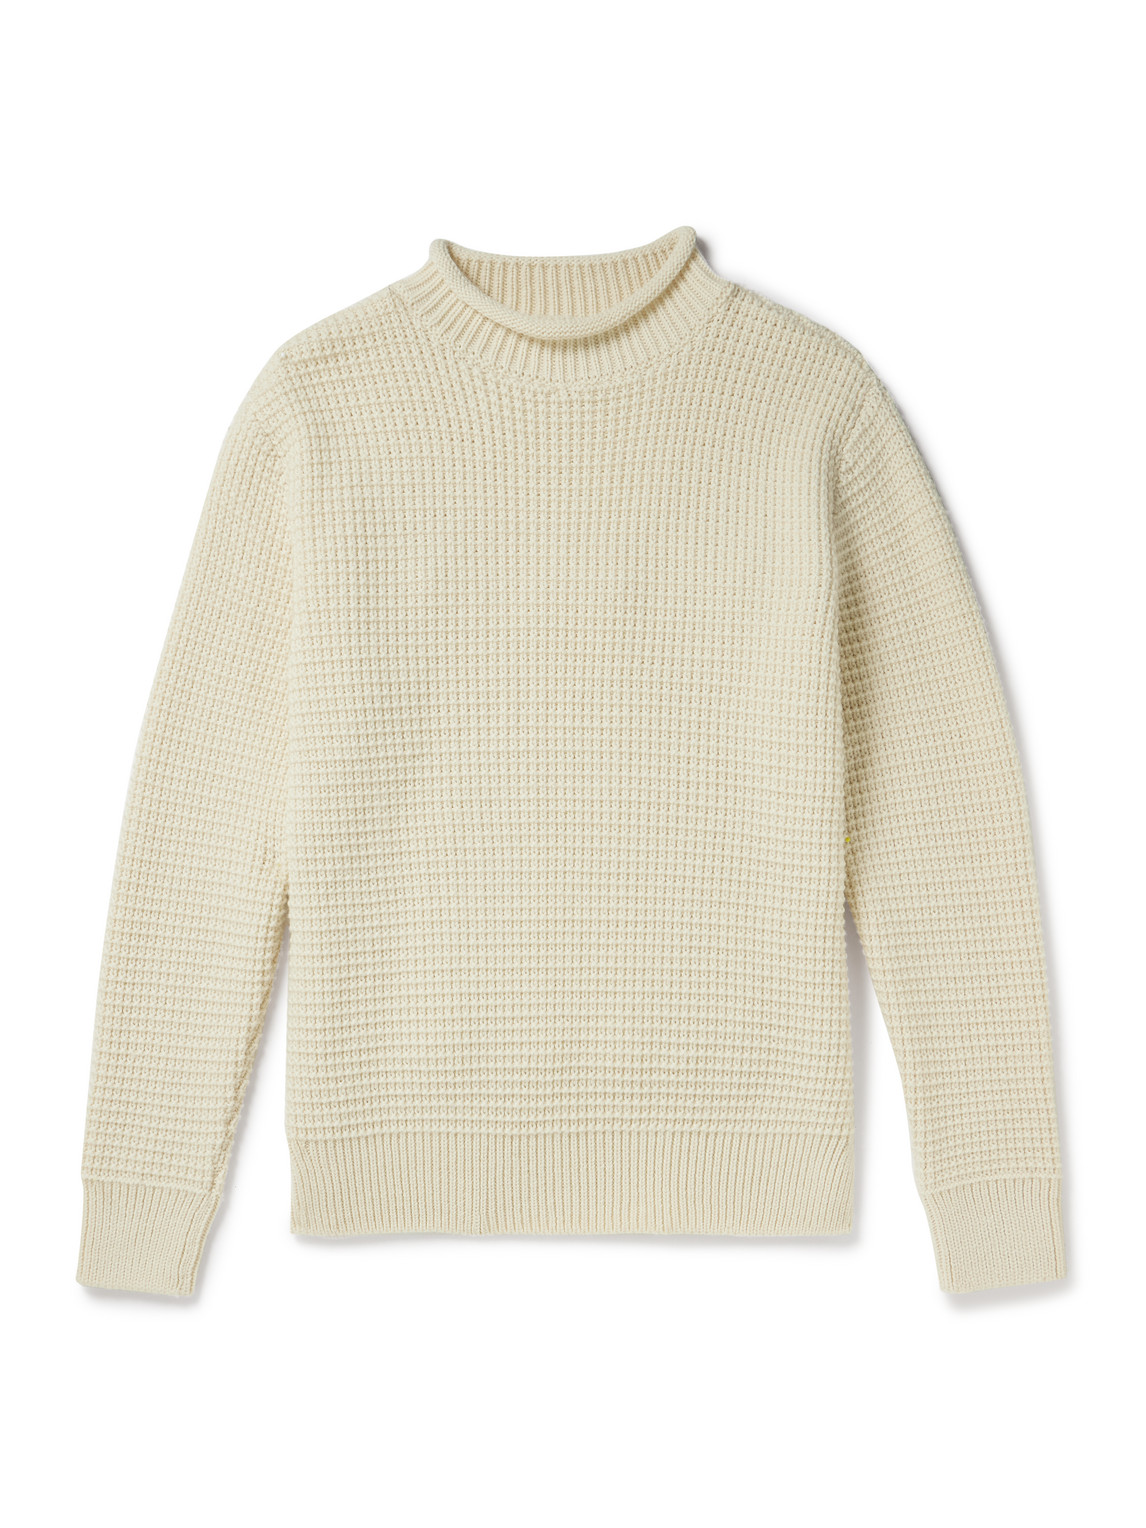 Sunspel Waffle-knit Merino Wool Mock-neck Sweater In Neutrals